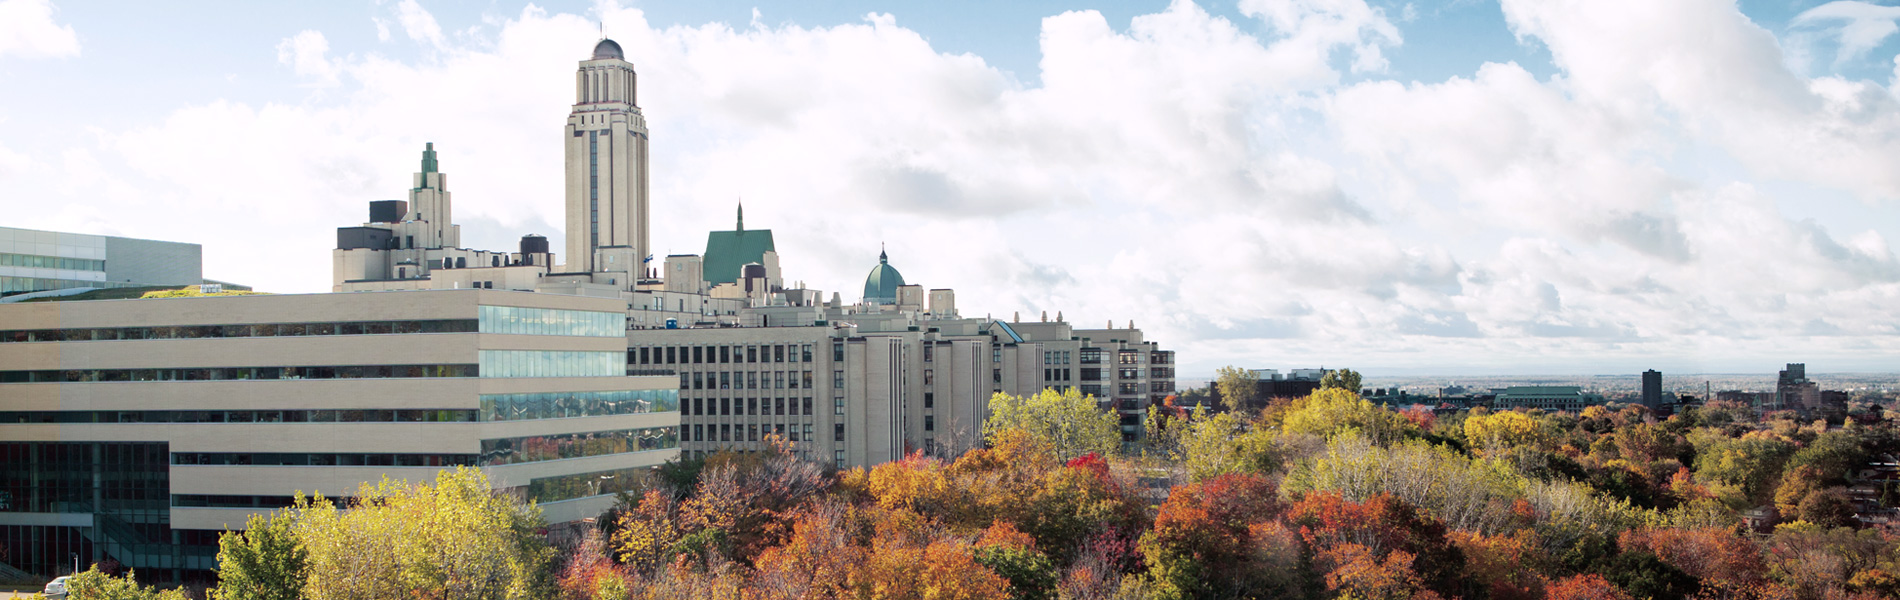 OUR CAMPUSES  Université de Montréal